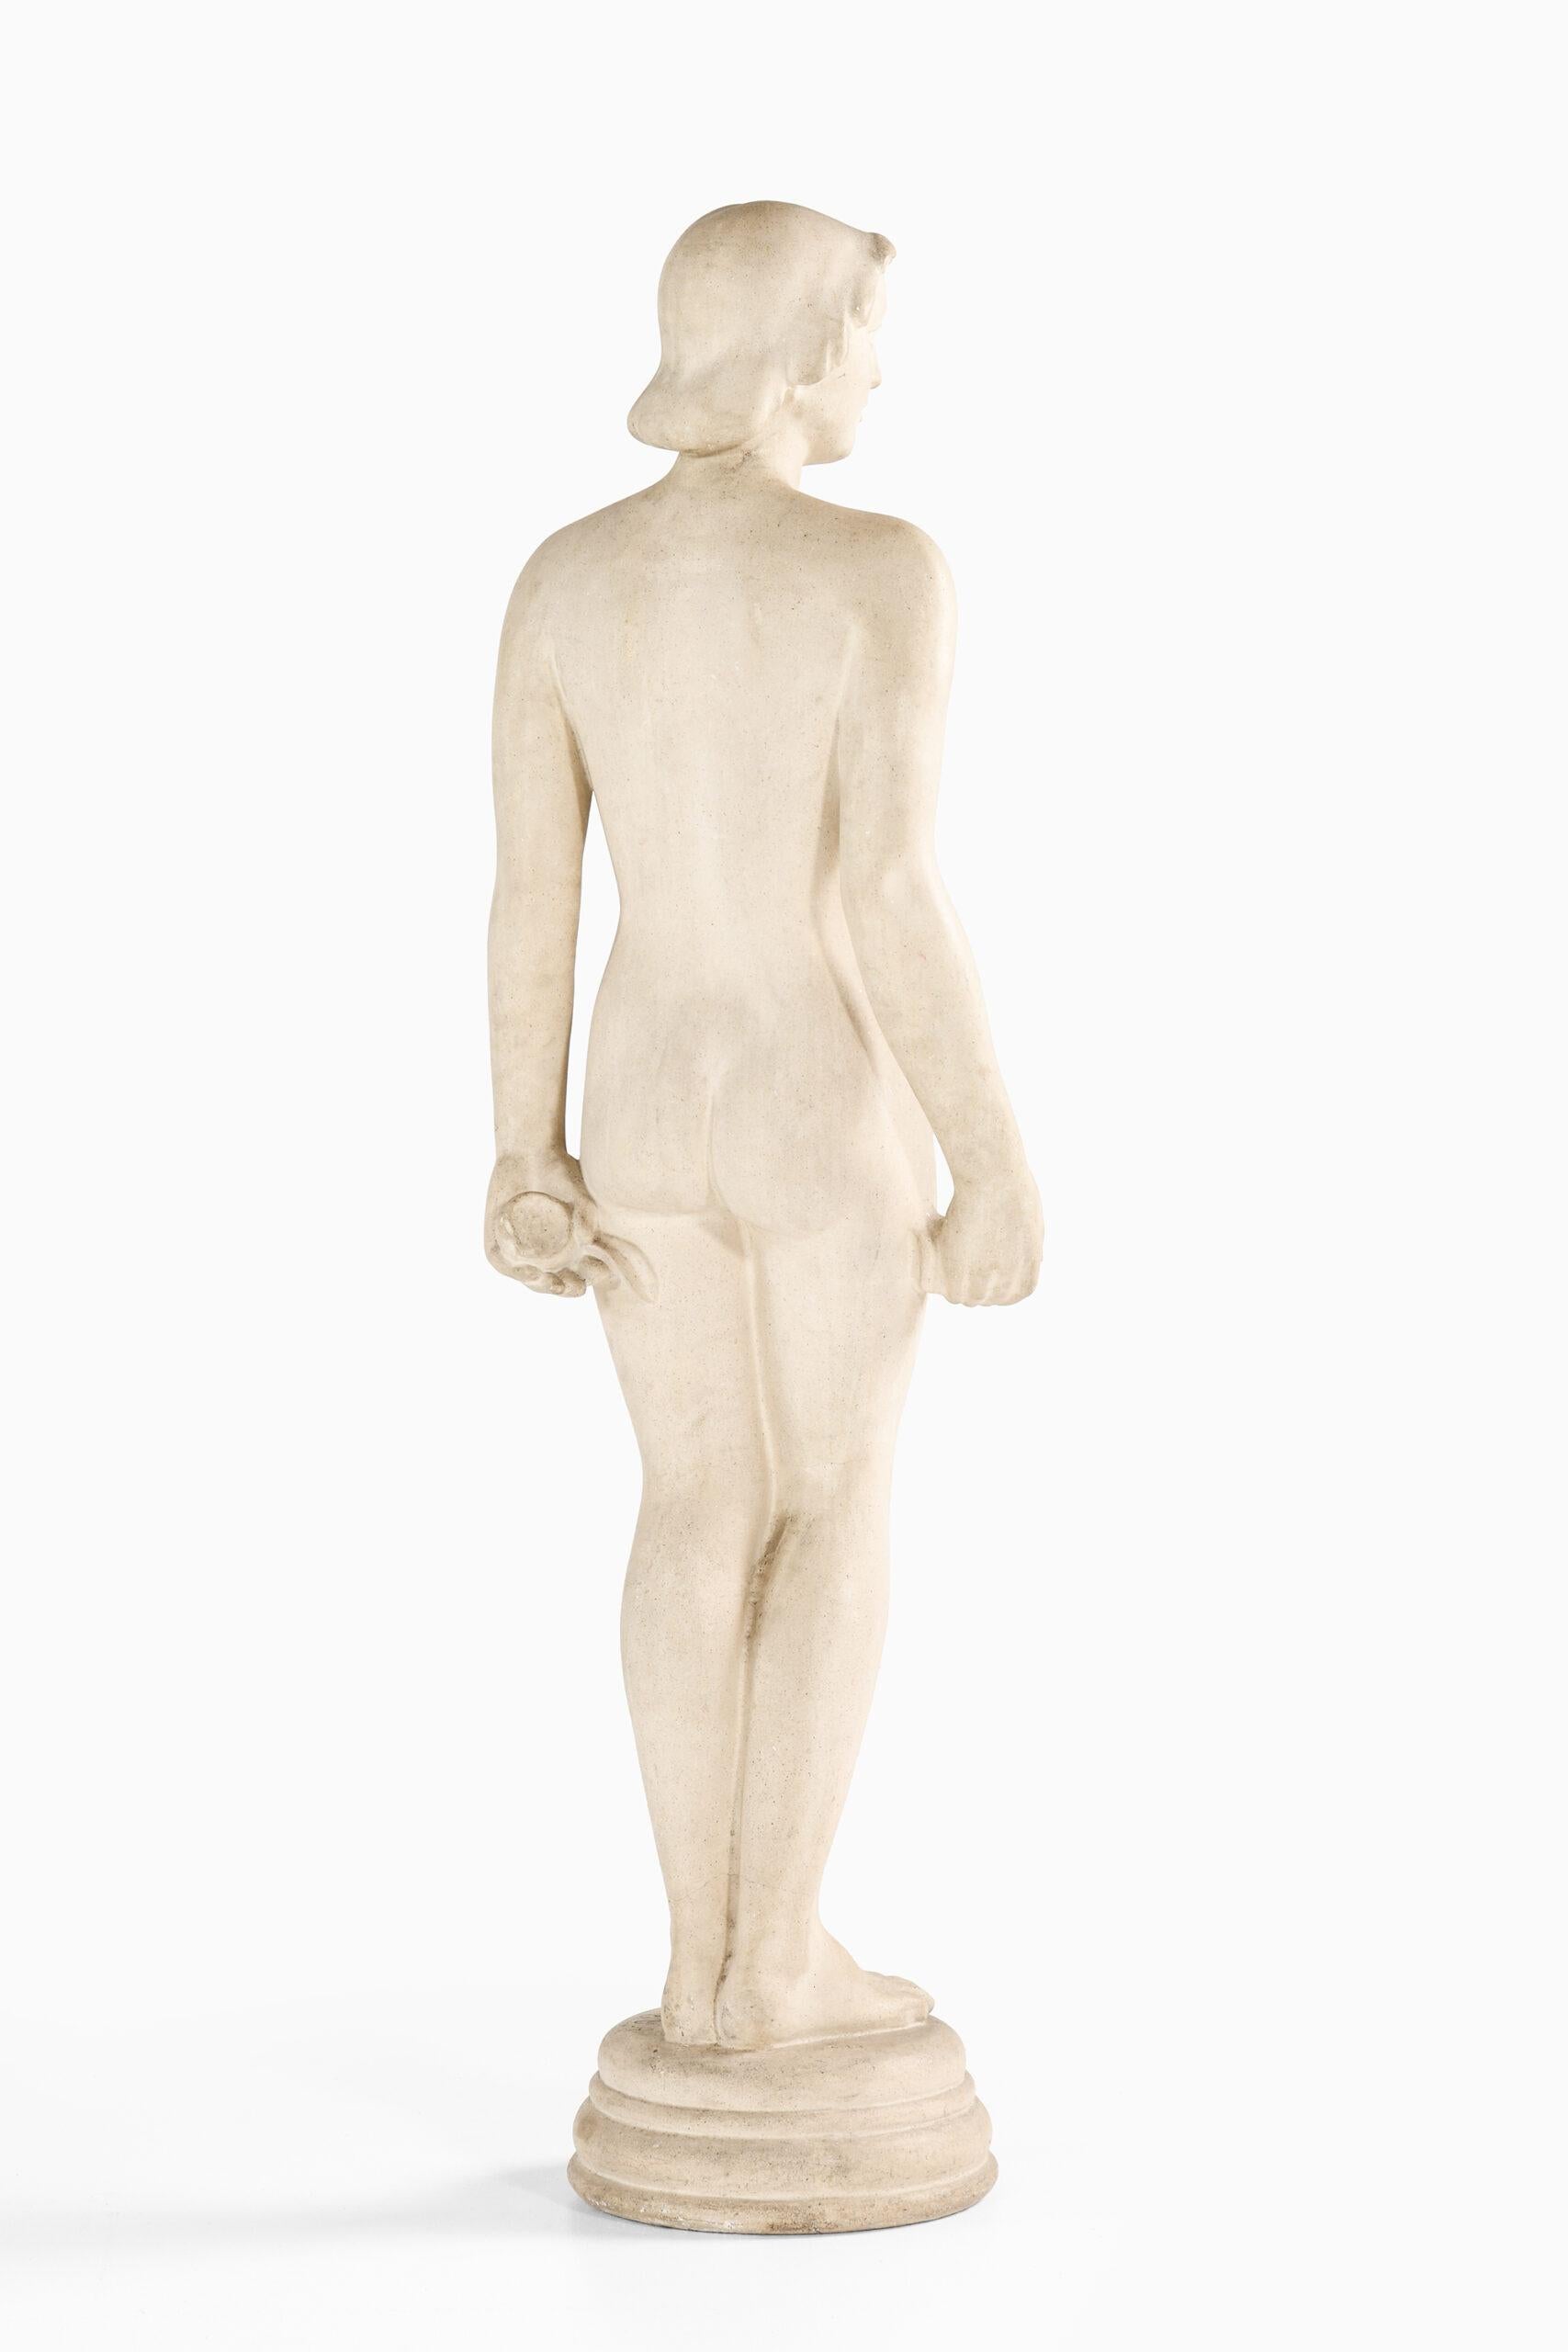 Stone Mathilius Schack Elo Garden Sculpture ‘Eva’ Produced in Denmark For Sale